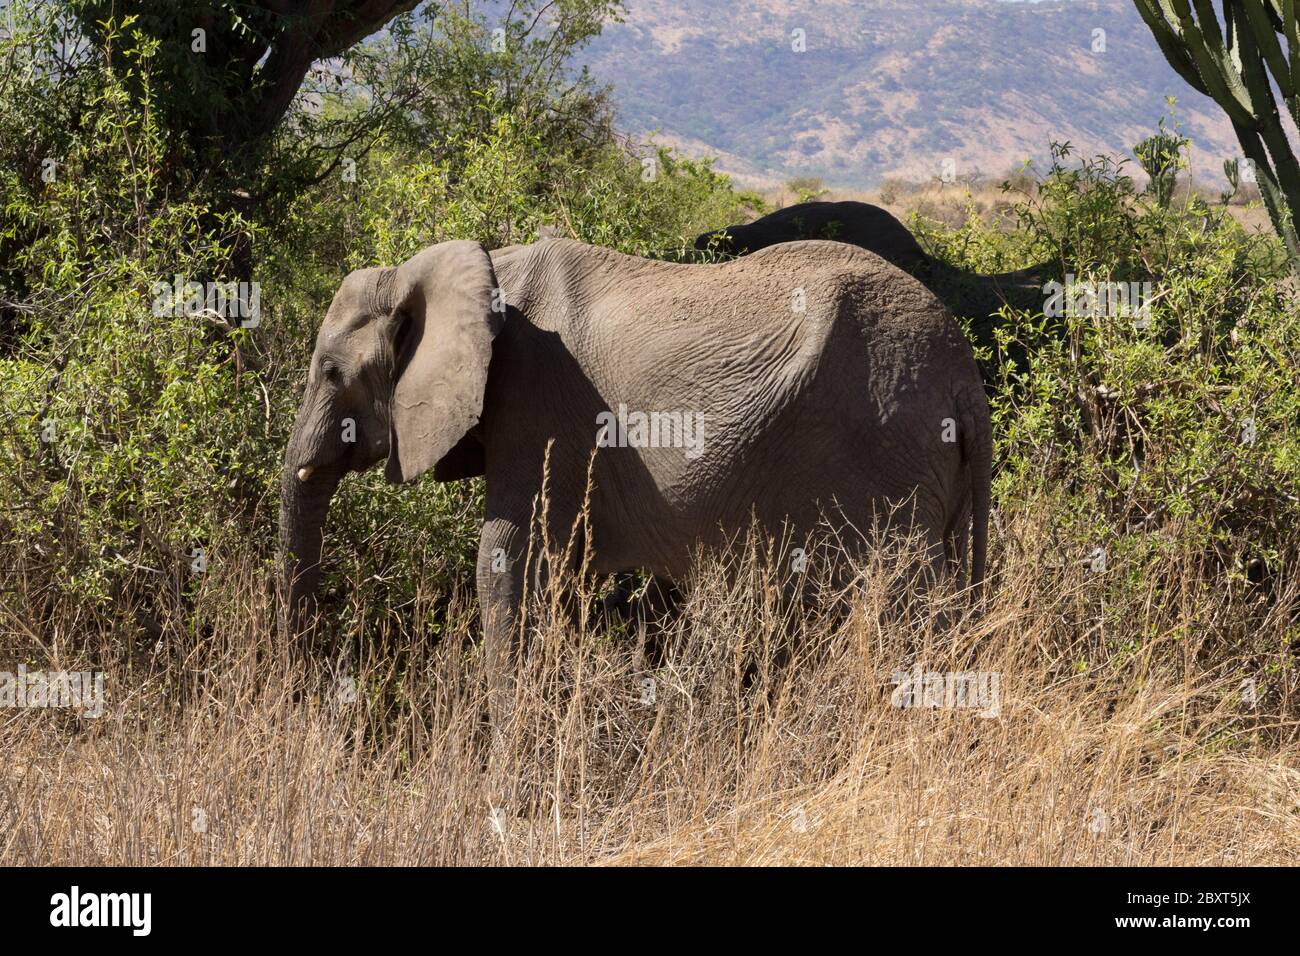 African Elephant in Ruaha National Park, Tanzania Stock Photo